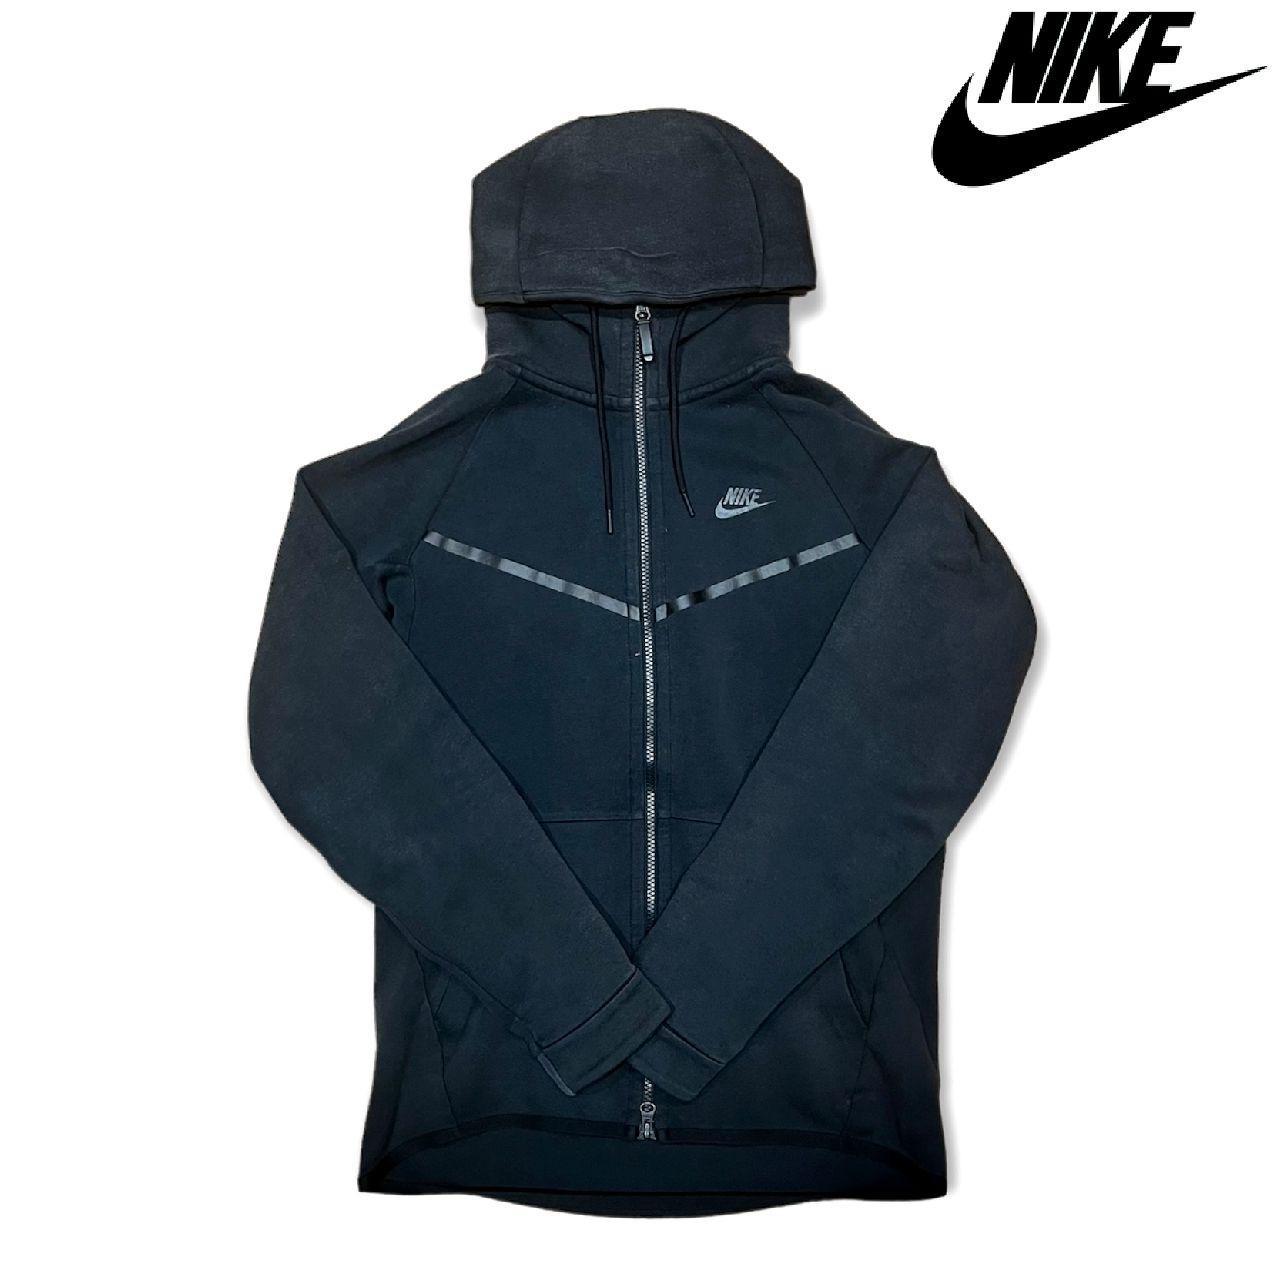 Nike tech fleece hoodie - Black with black... - Depop